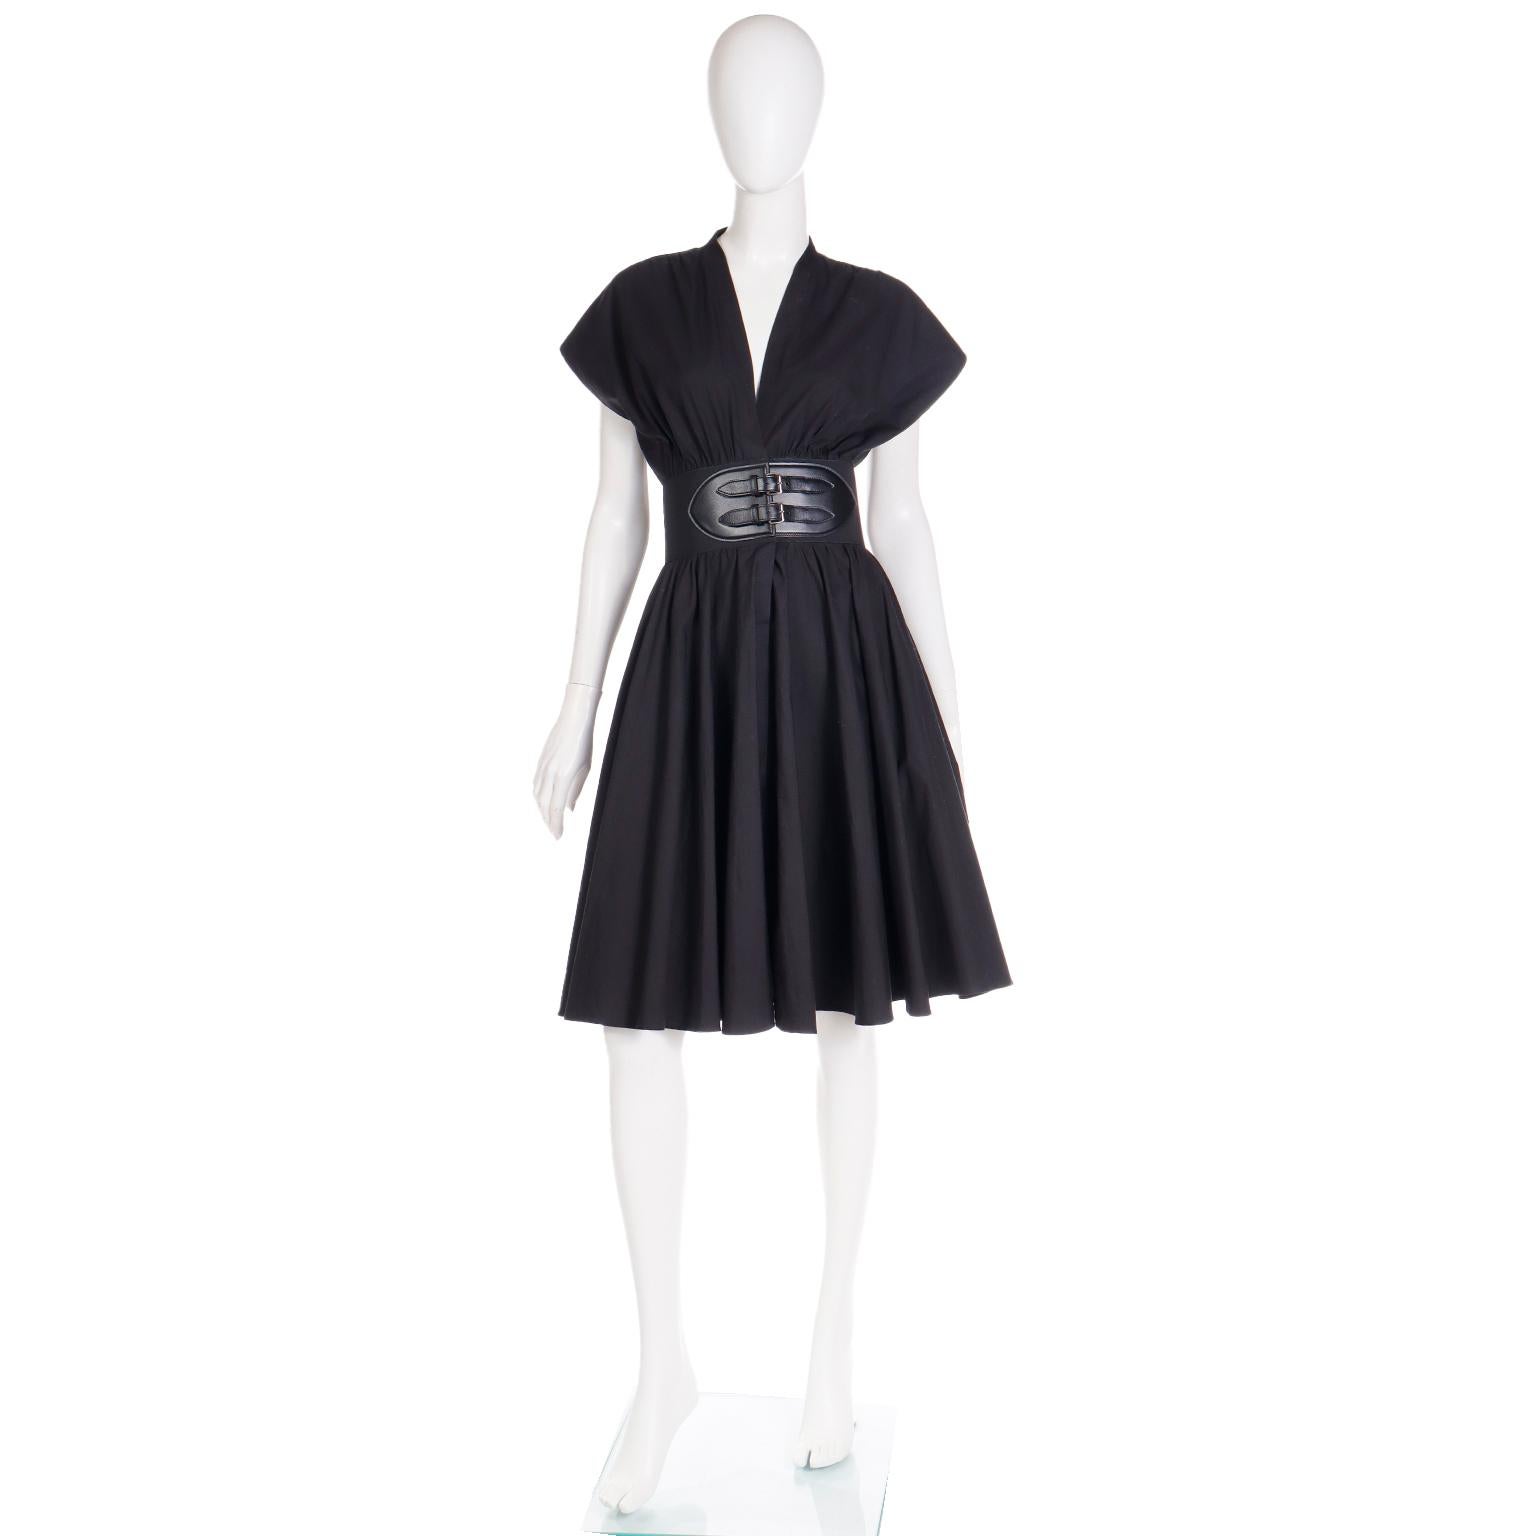 Cette robe Alaia moderne et facile à porter est confectionnée en popeline de coton noire impeccable et comporte une ceinture Alaia intégrée avec garniture en cuir. La robe présente une jupe ample et amusante, un corsage en V profond et des manches